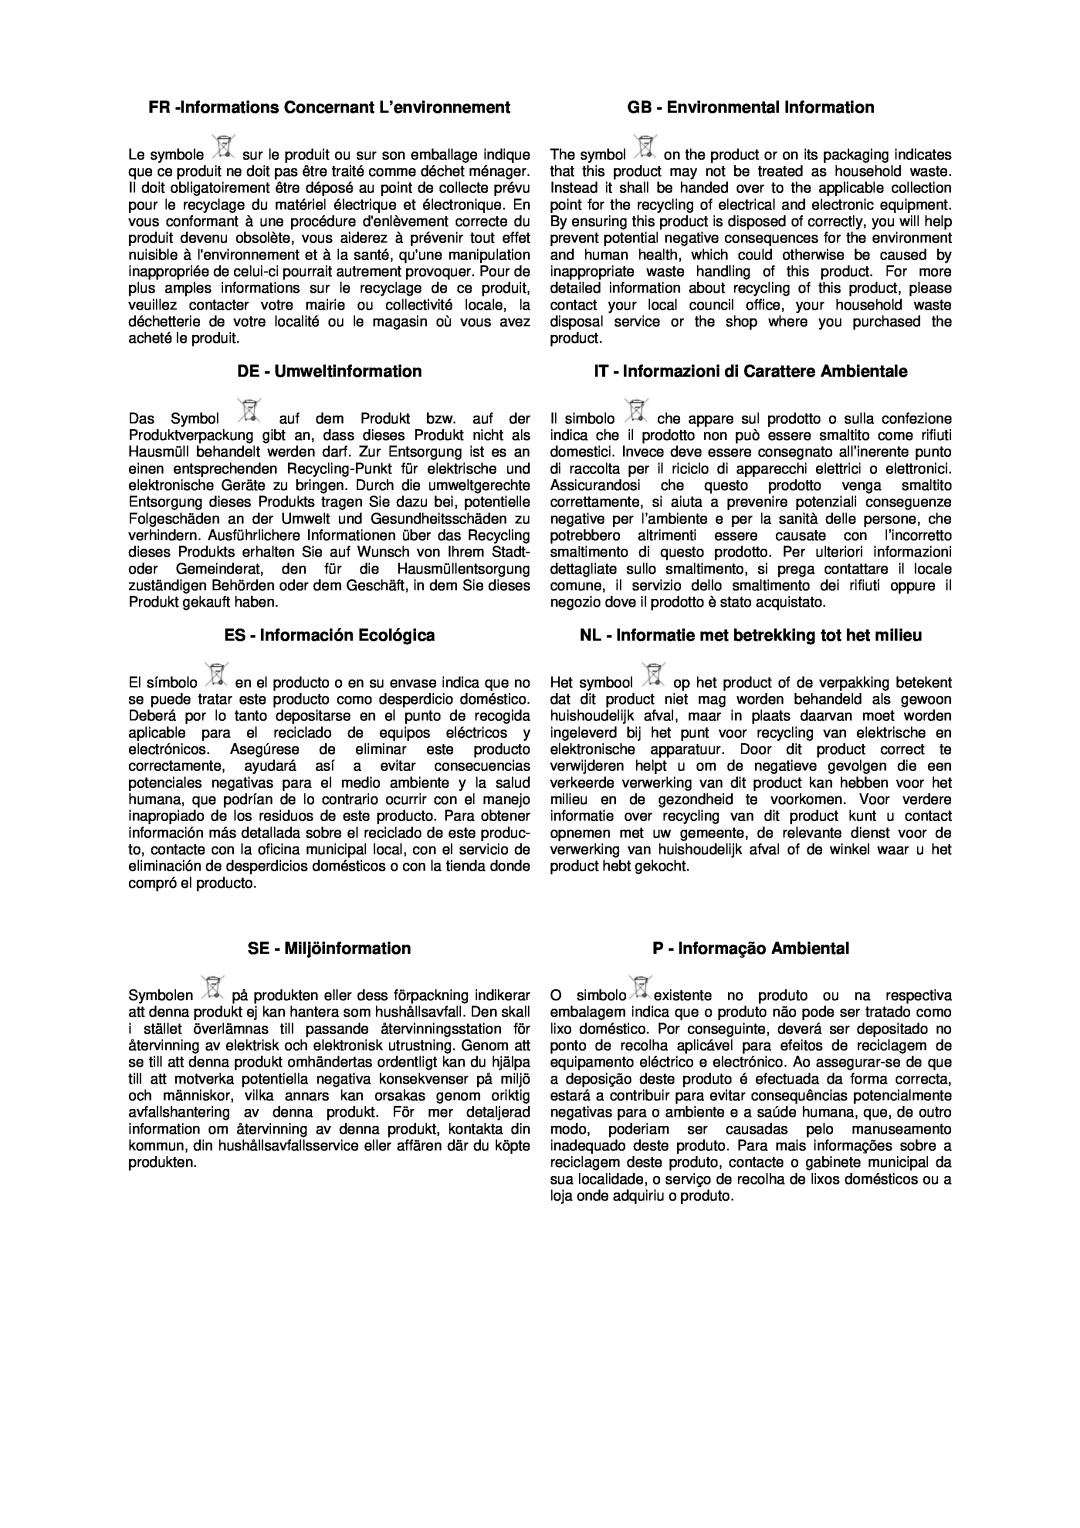 Husqvarna FS309 FR -Informations Concernant L’environnement, GB - Environmental Information, DE - Umweltinformation 